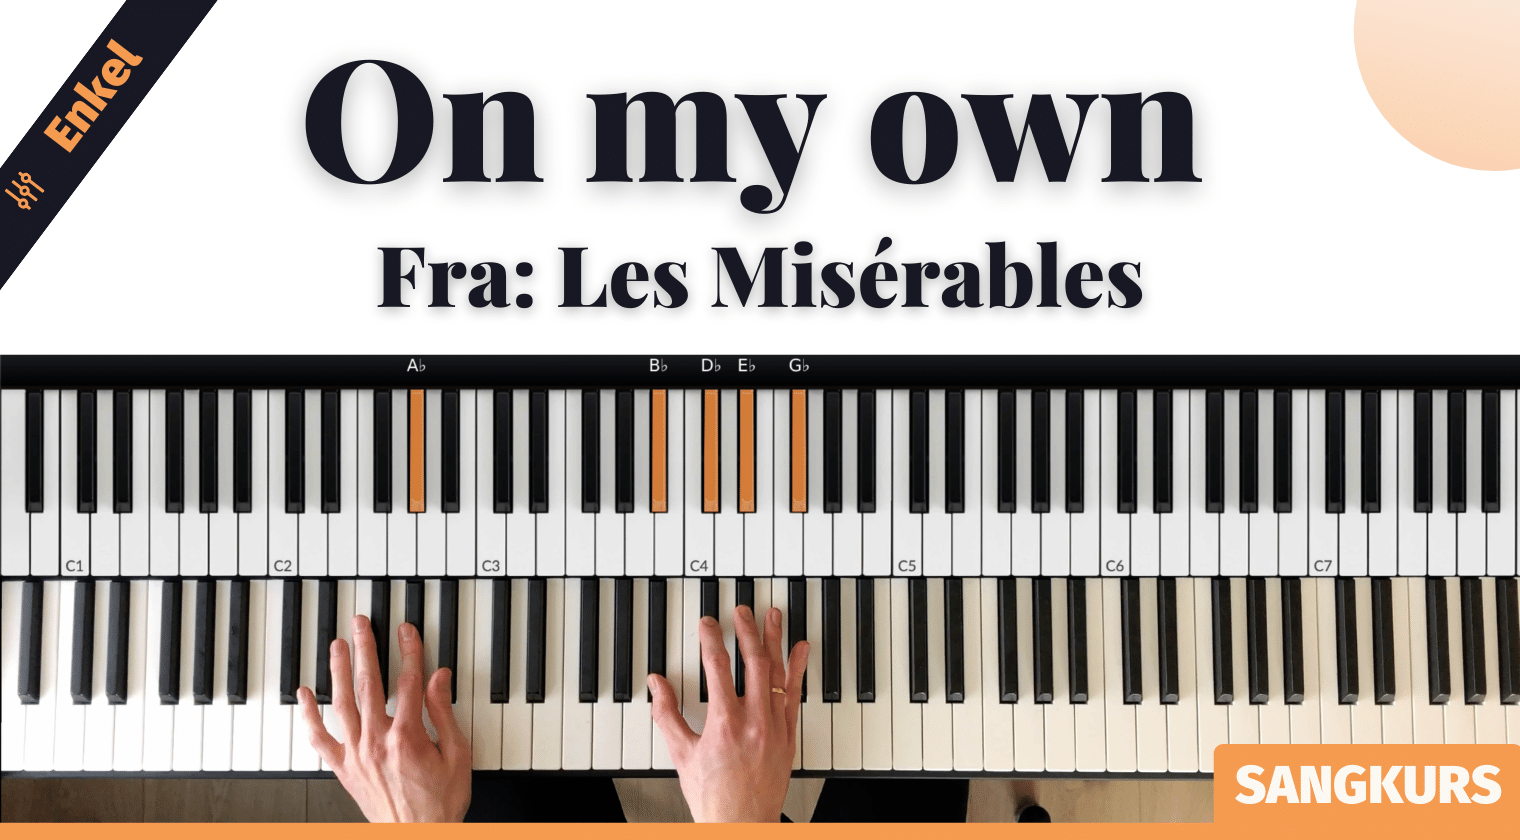 Nytt kurs: "On My Own" fra Les Misérables